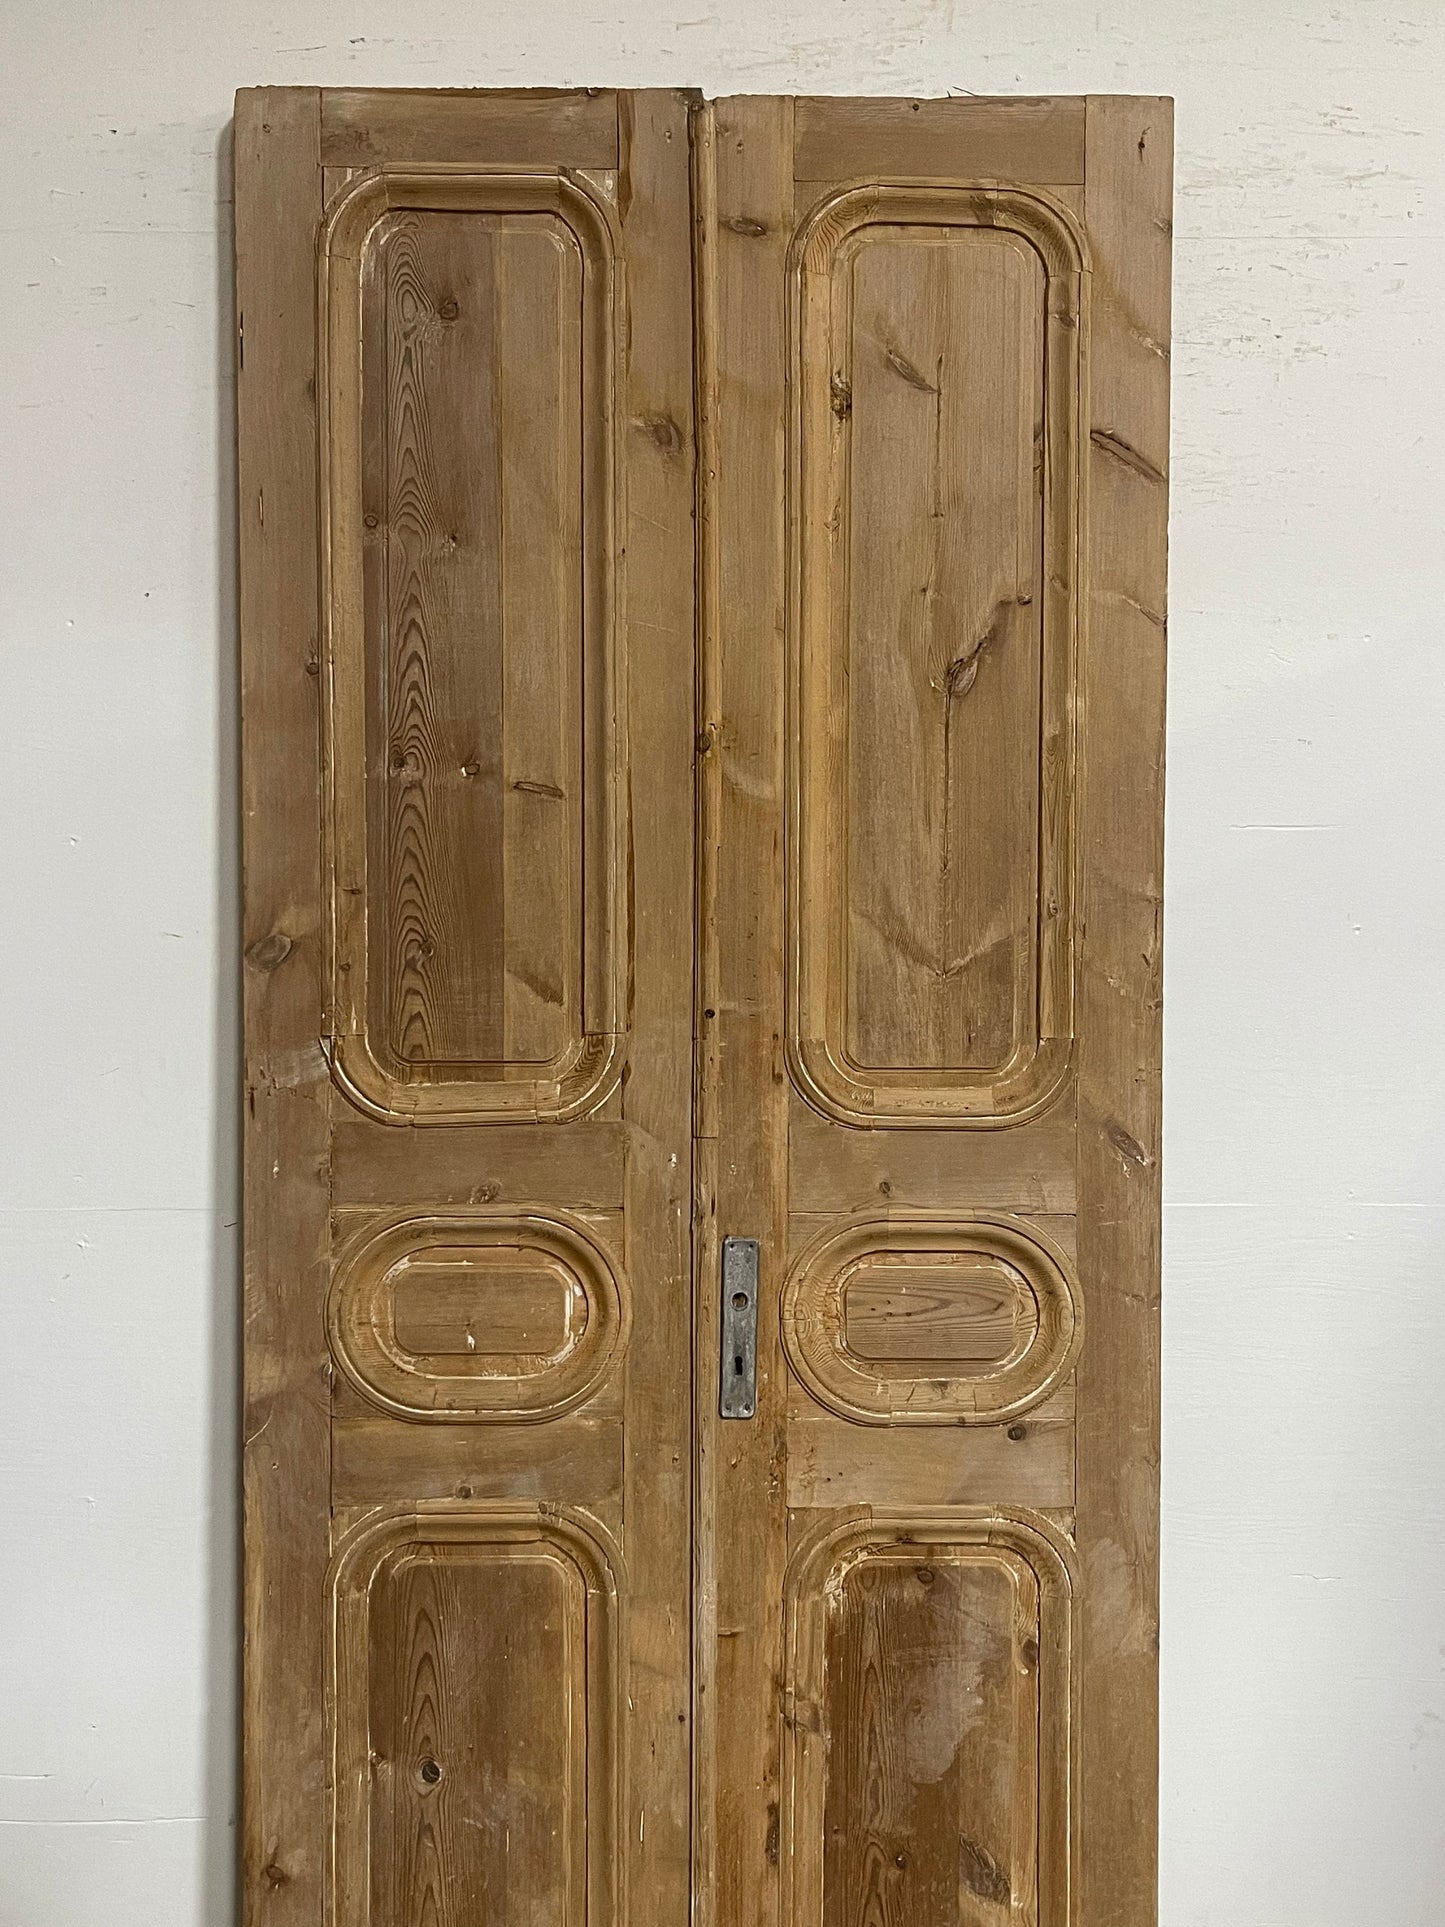 Antique French panel doors (102x44.5